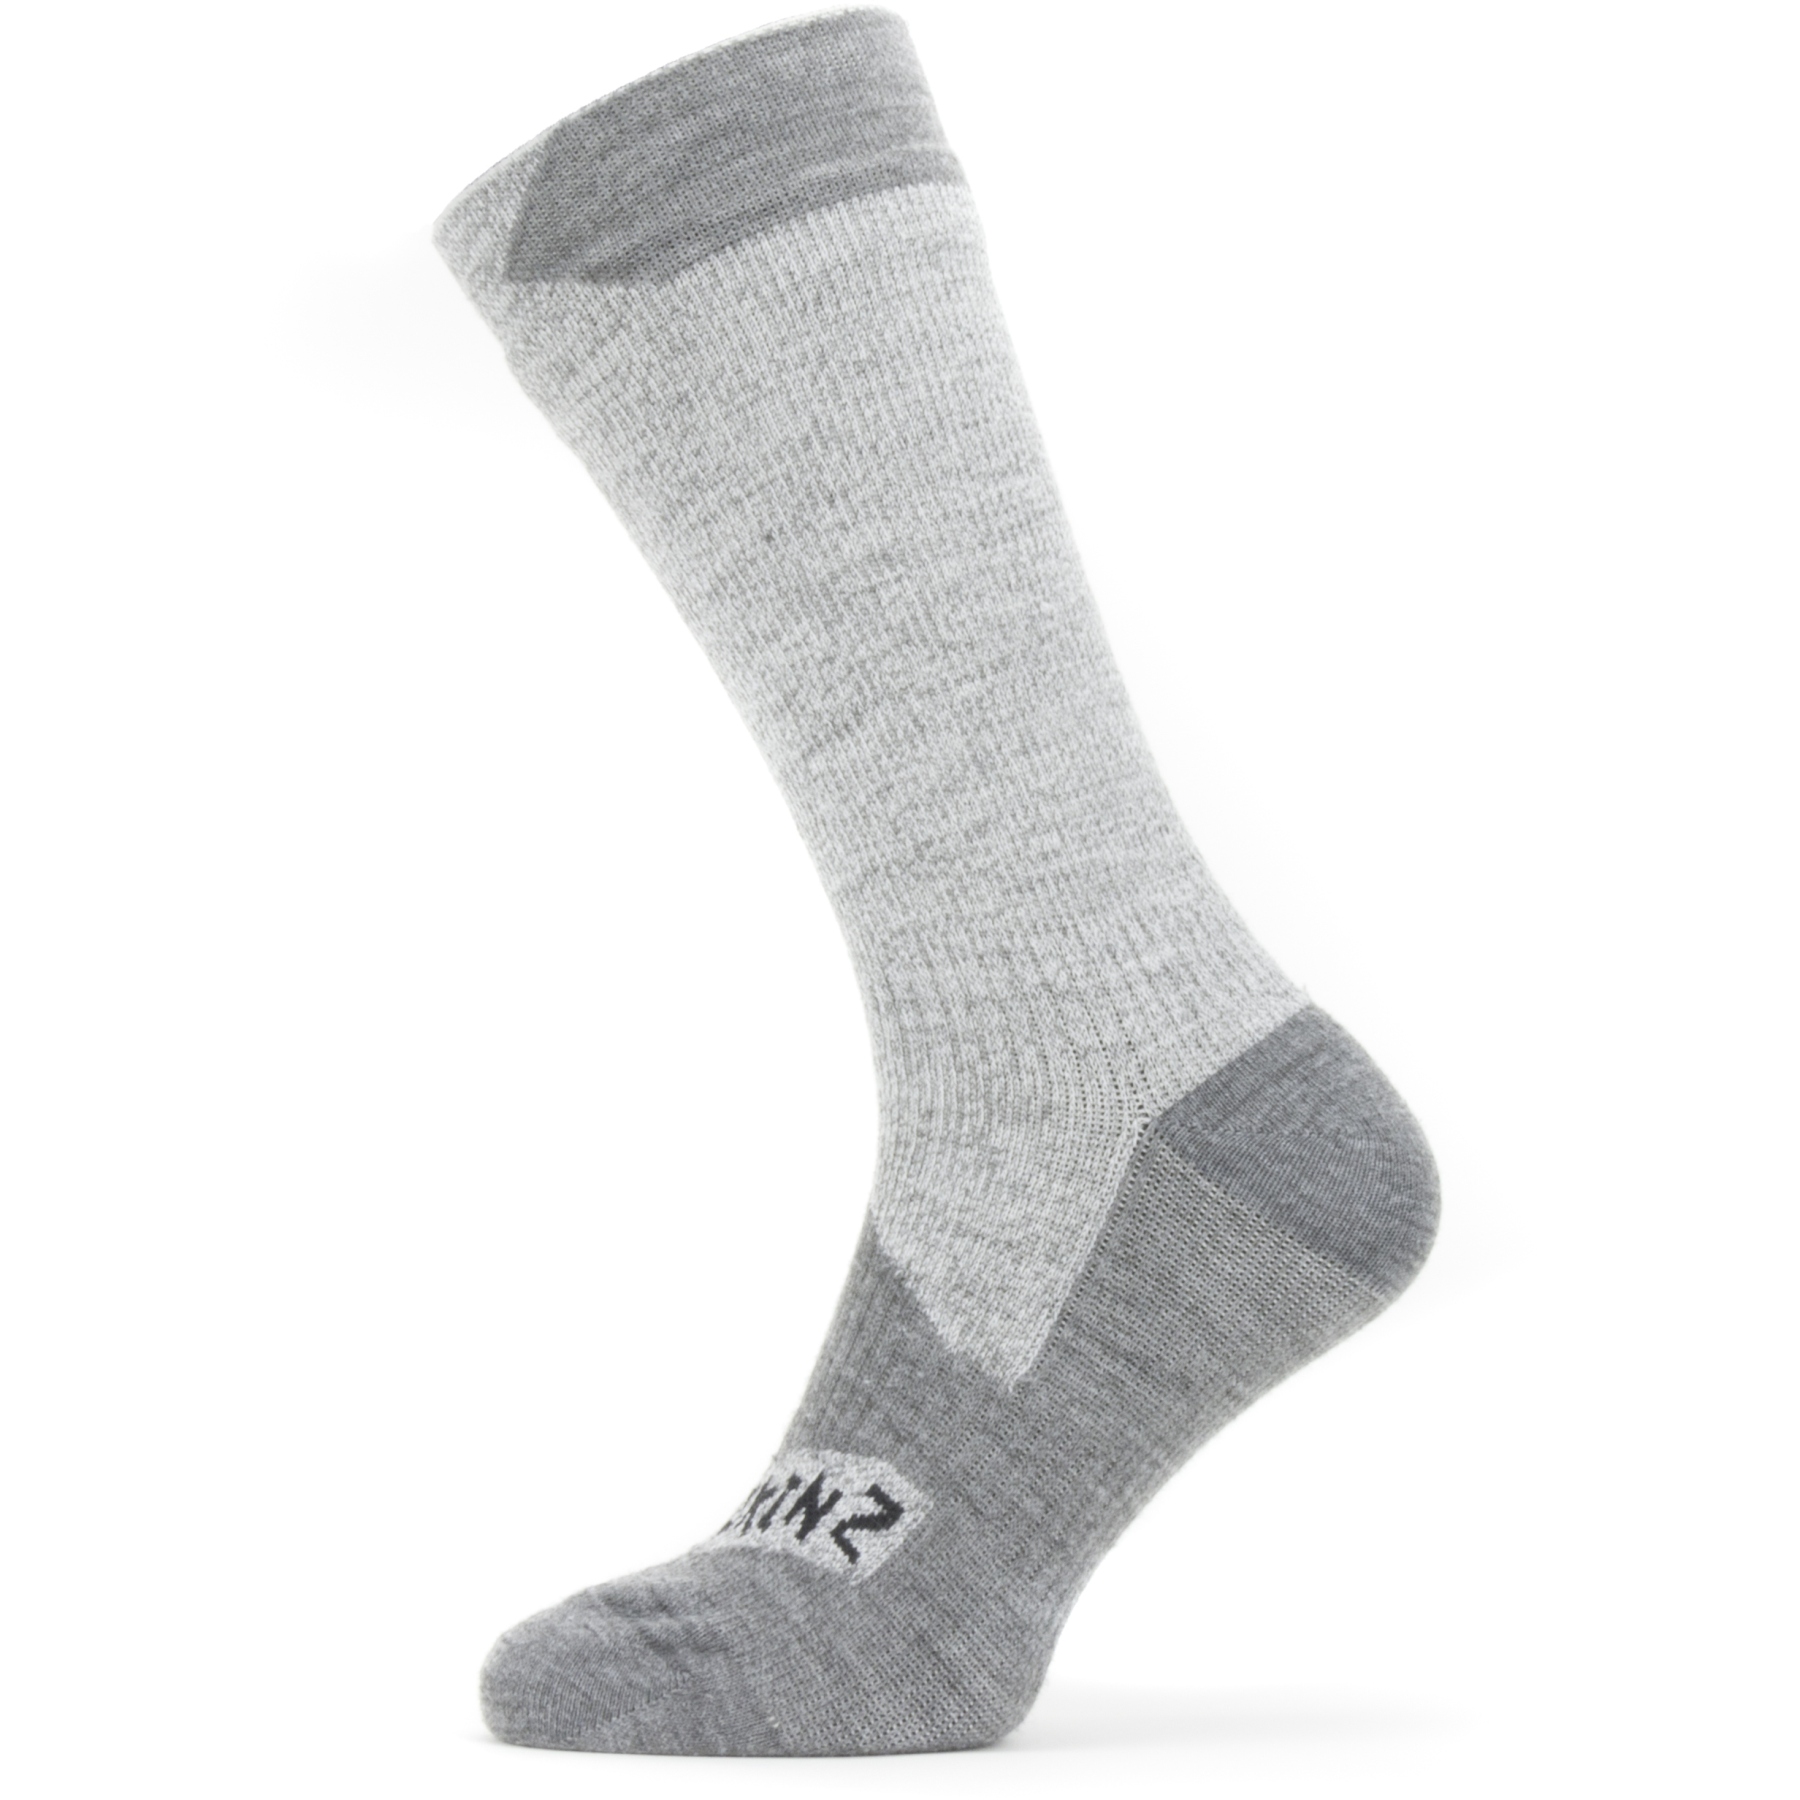 Productfoto van SealSkinz Raynham Waterdichte Halflange Sokken Voor Alle Weersomstandigheden - Grey/Grey Marl